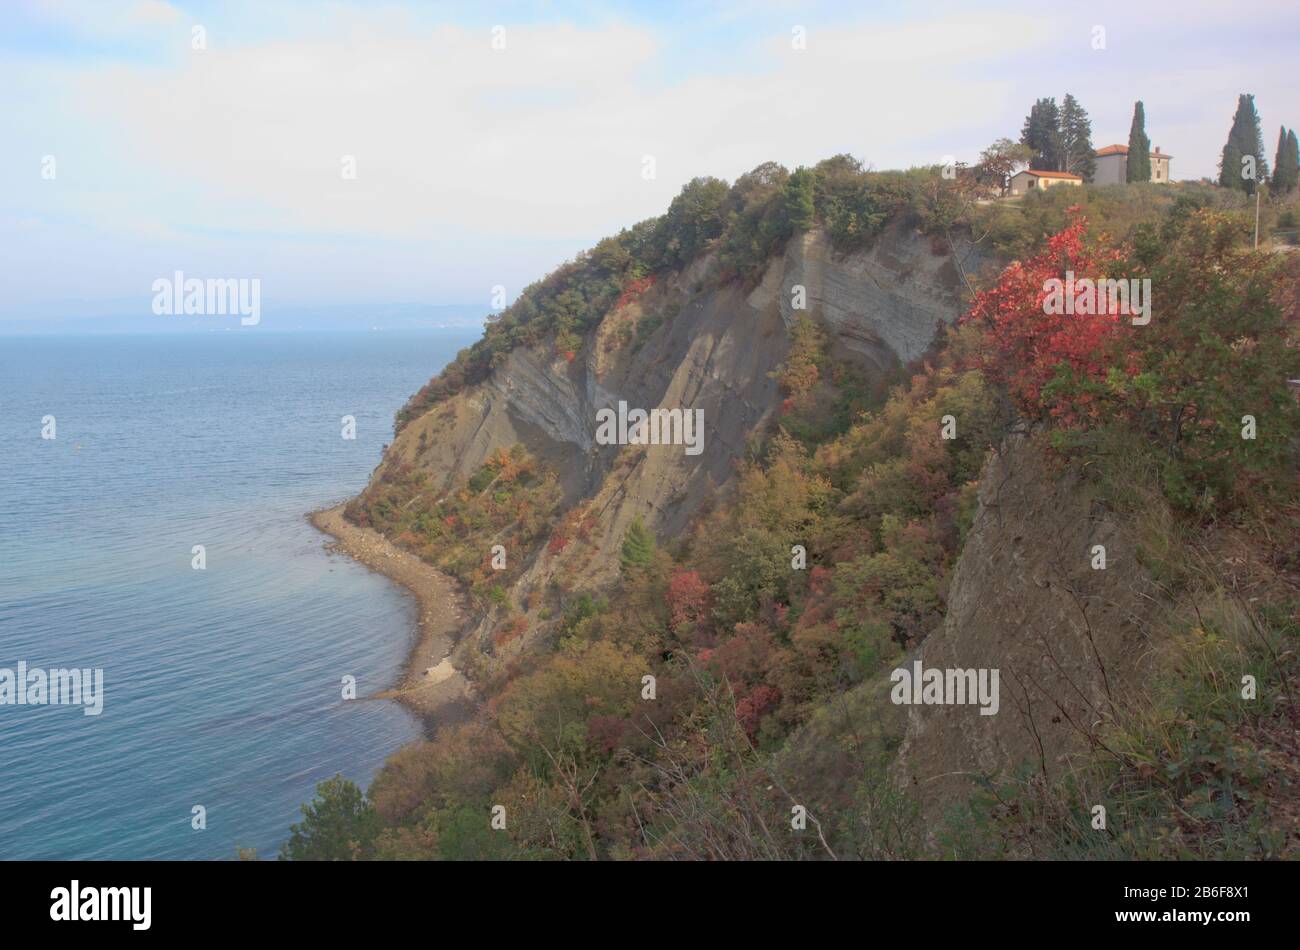 La costa eslovena del acantilado en otoño, Mesecev zaliv, el acantilado de flisch entre el cabo Kane y las salinas de Strunjan, la bahía de Trieste, Eslovenia, Europa mediterránea Foto de stock